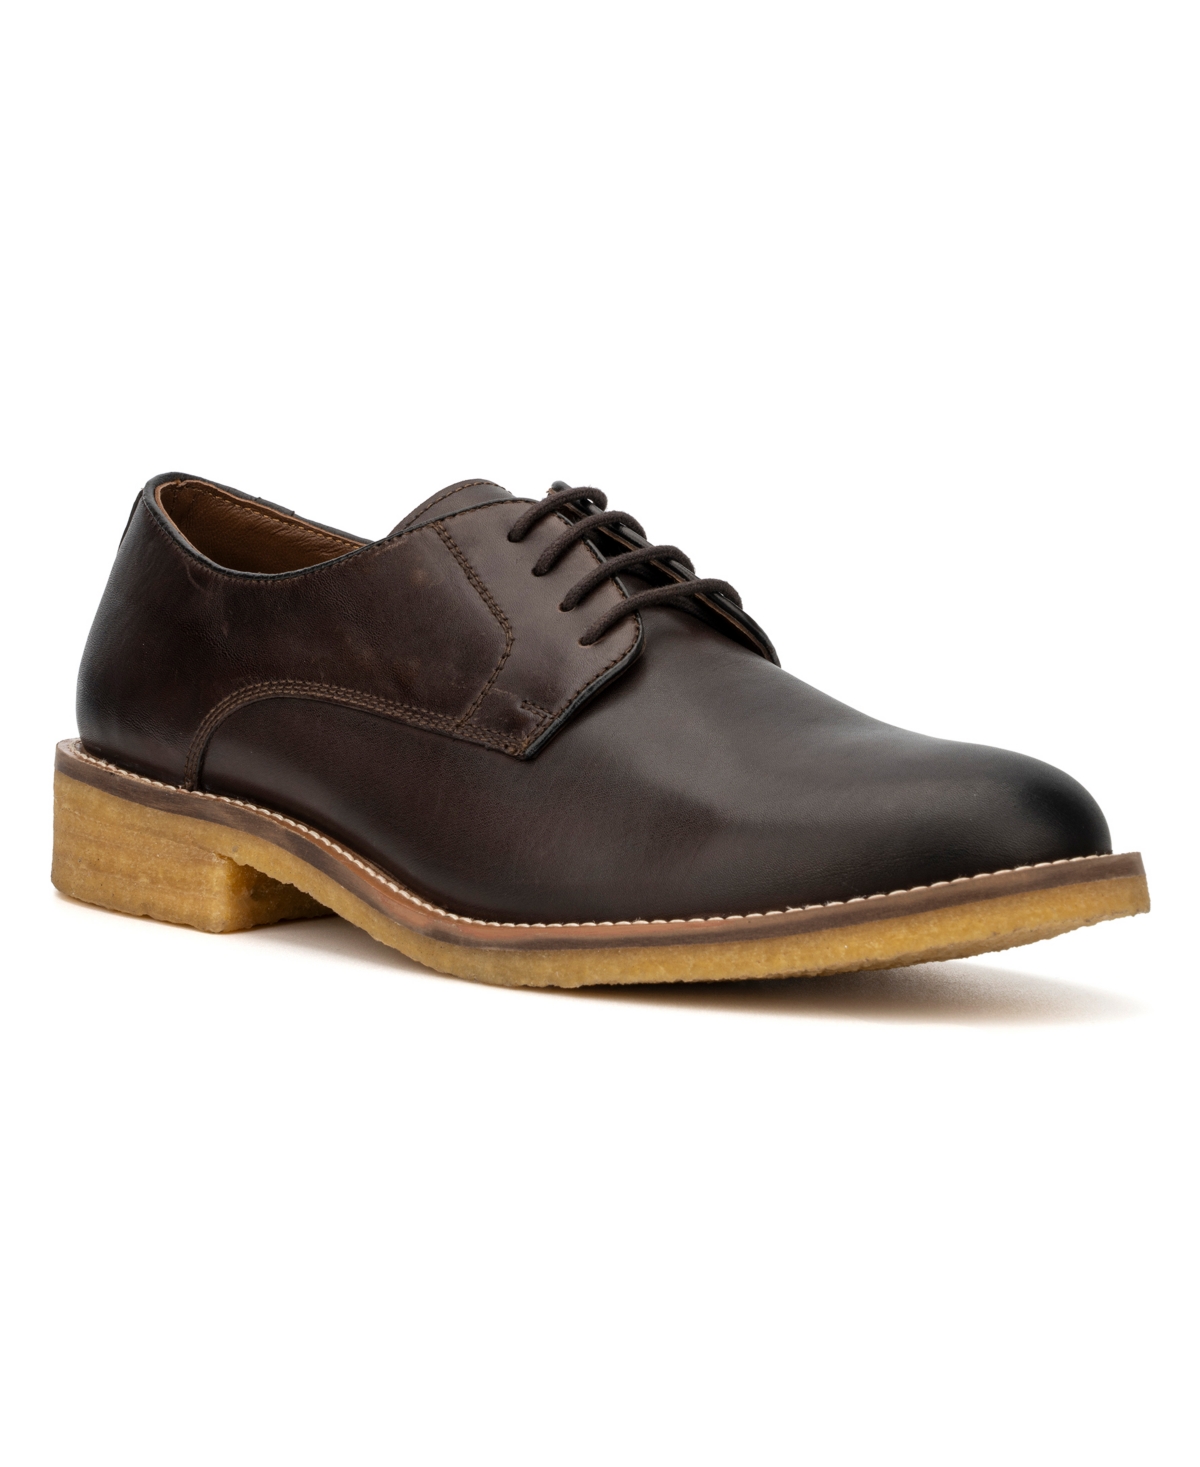 Men's Octavious Oxford Shoes - Brown